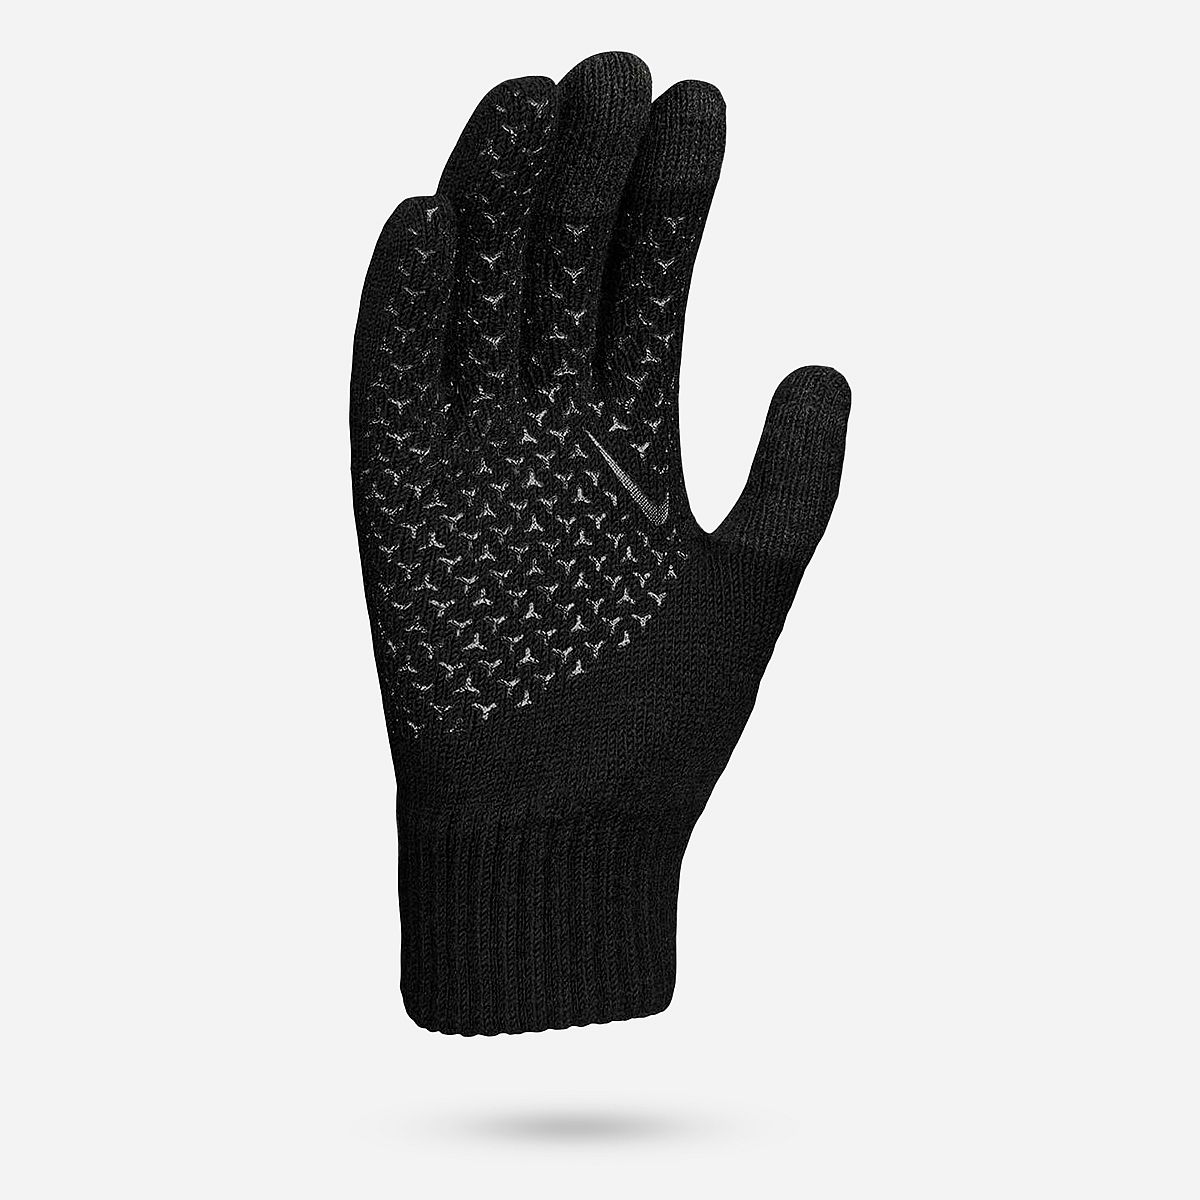 AN262004 Knitted Tech Grip Gloves 2.0